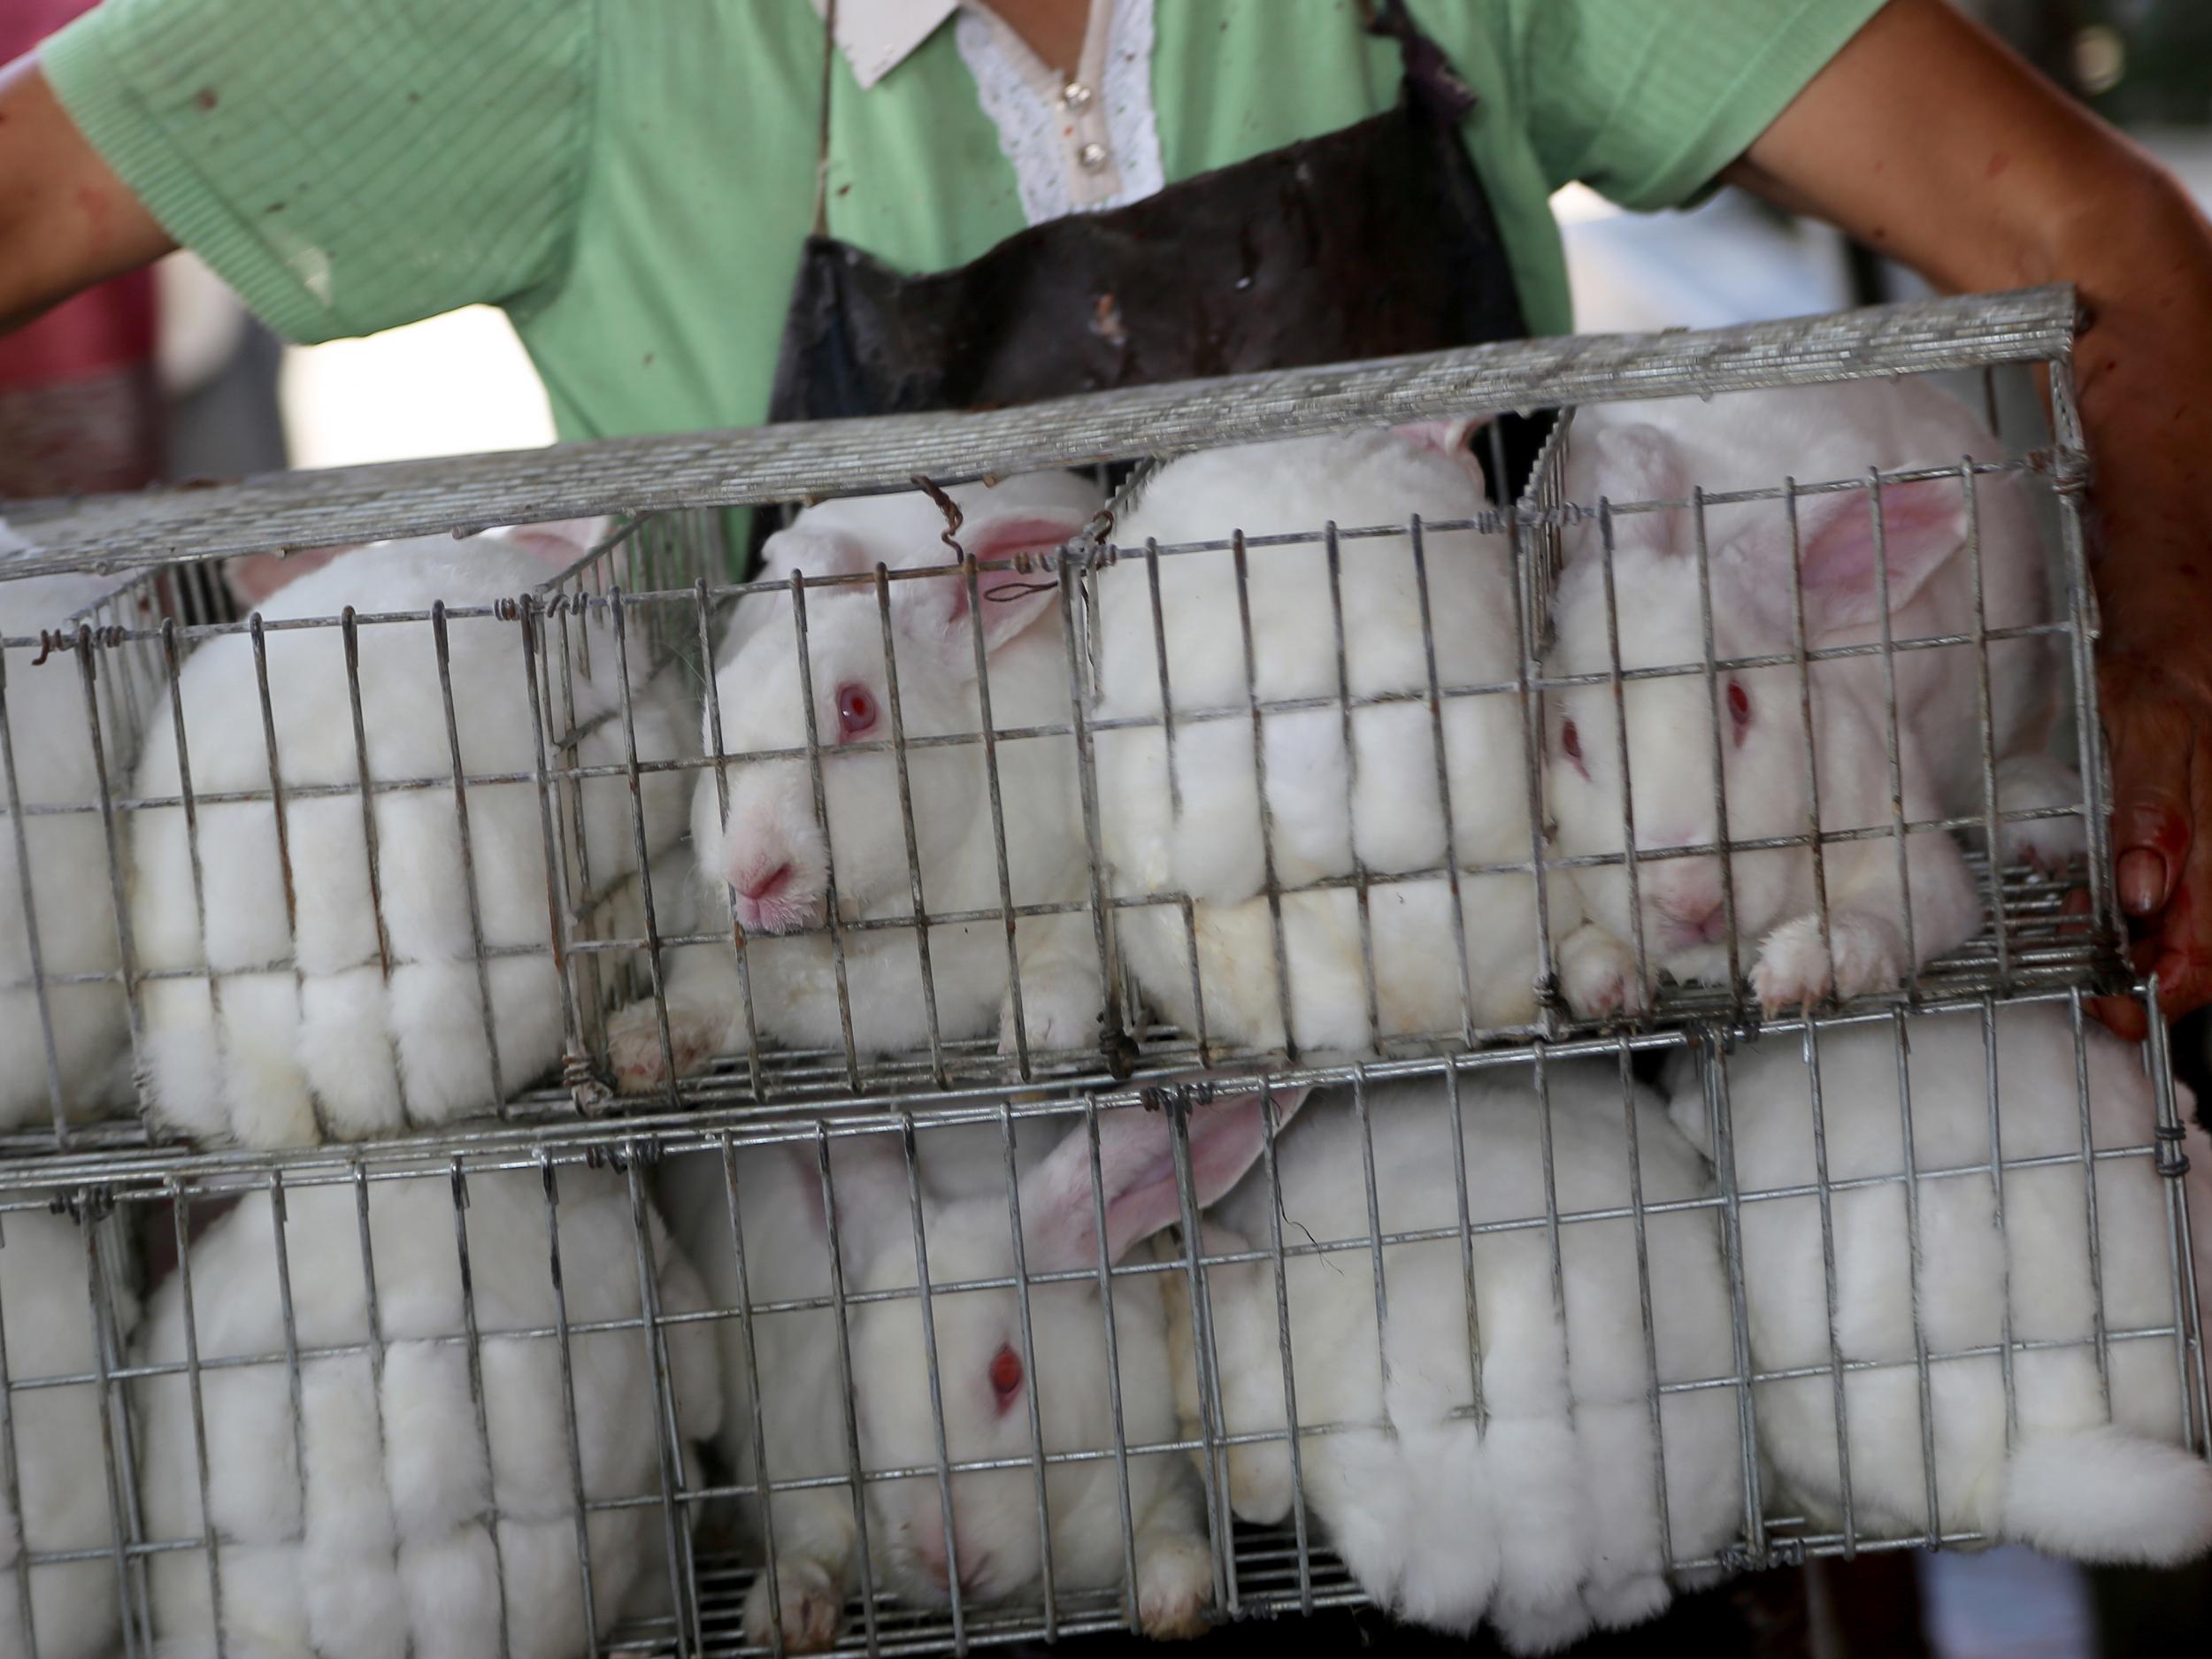 Rabbits at a fur farm in China